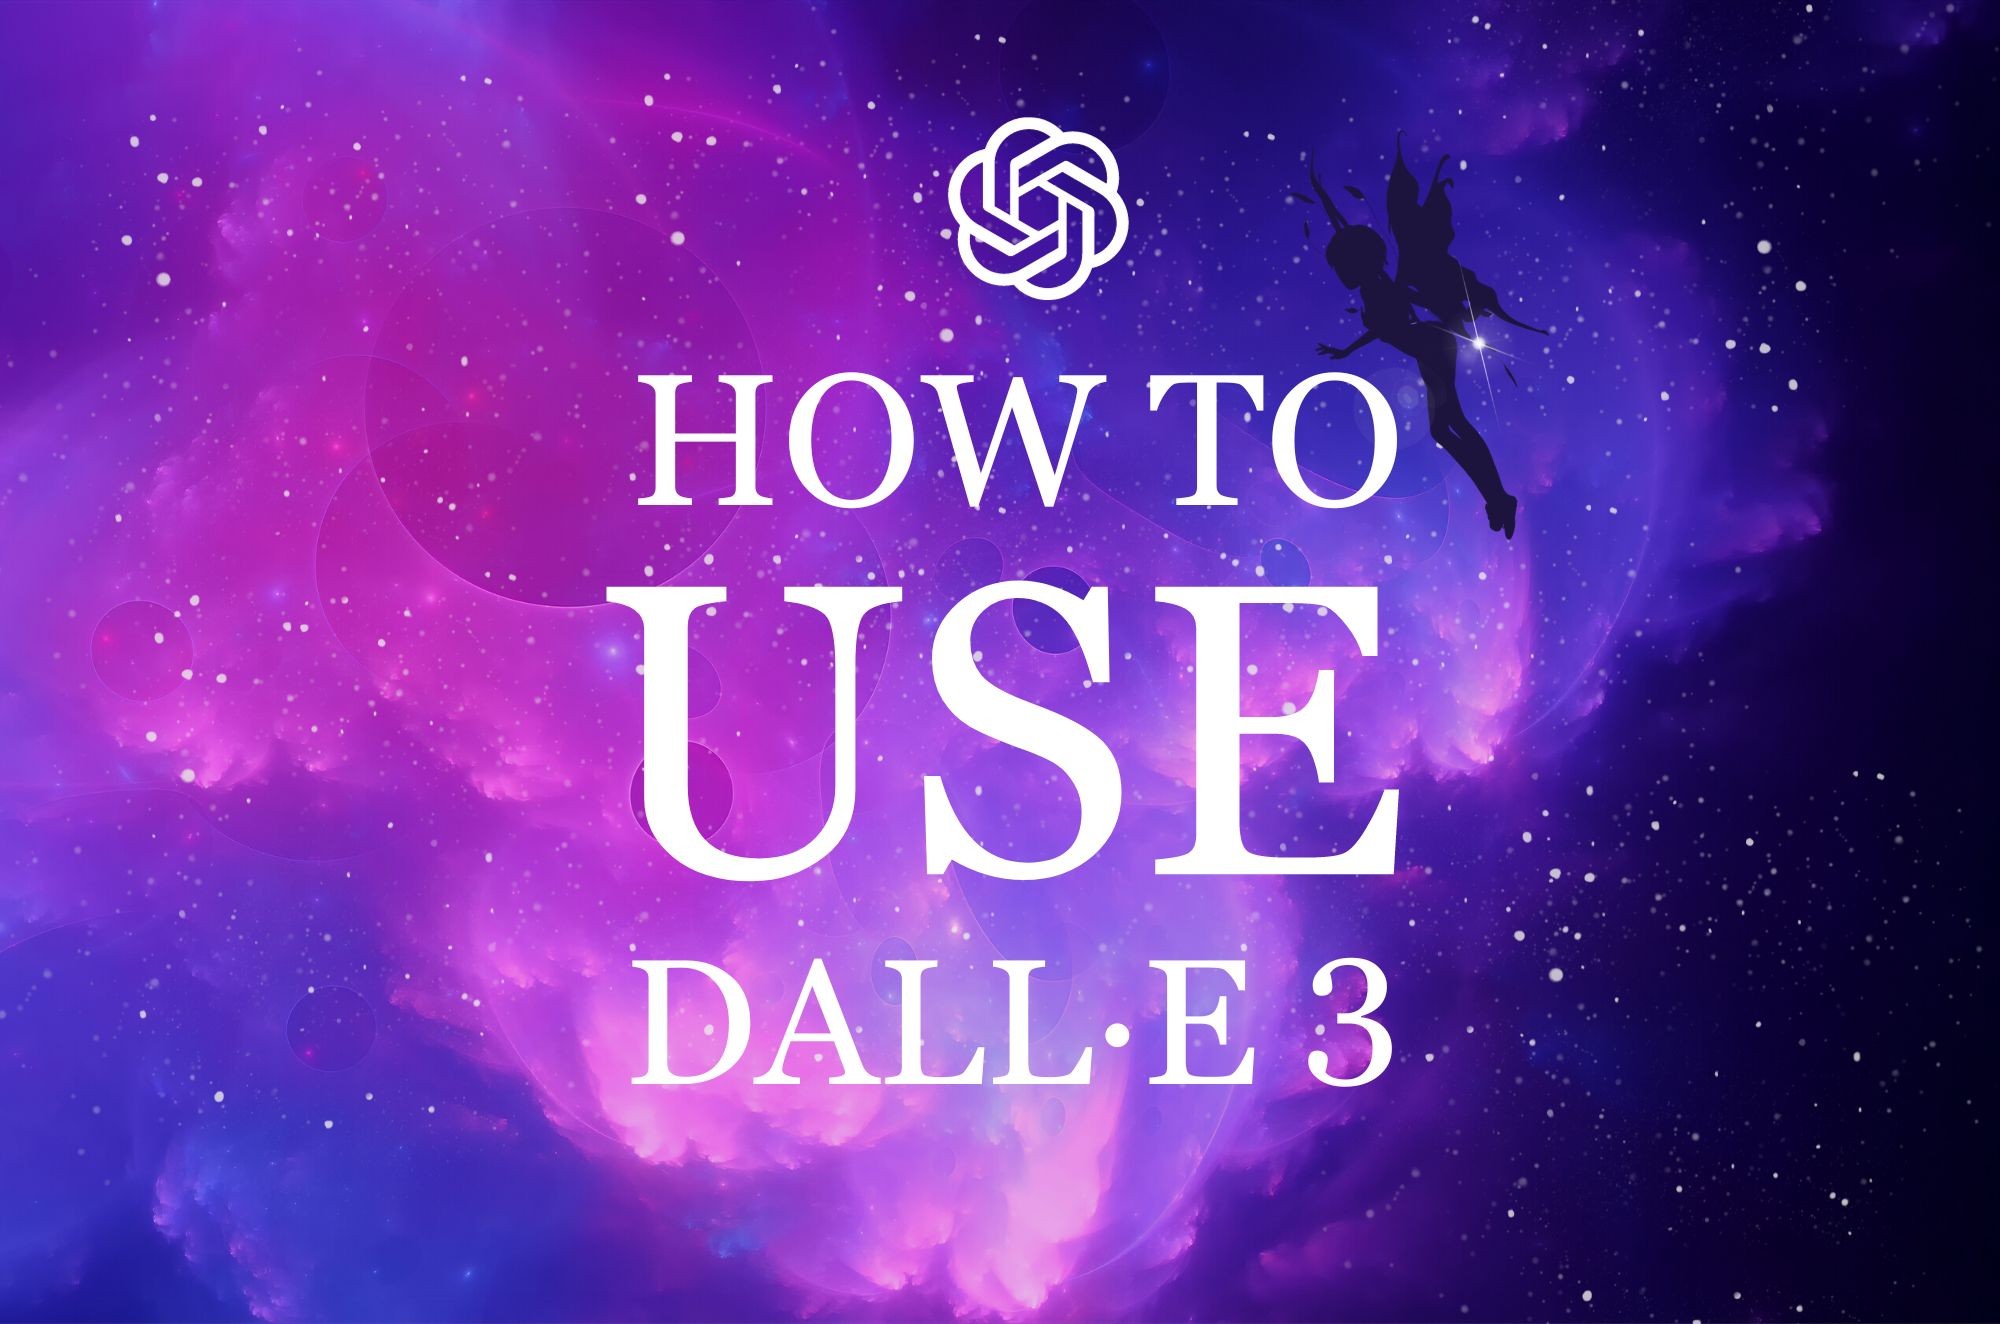 How to Use DALL·E 3 | DALL·E 3 vs DALL·E 2 Comparison